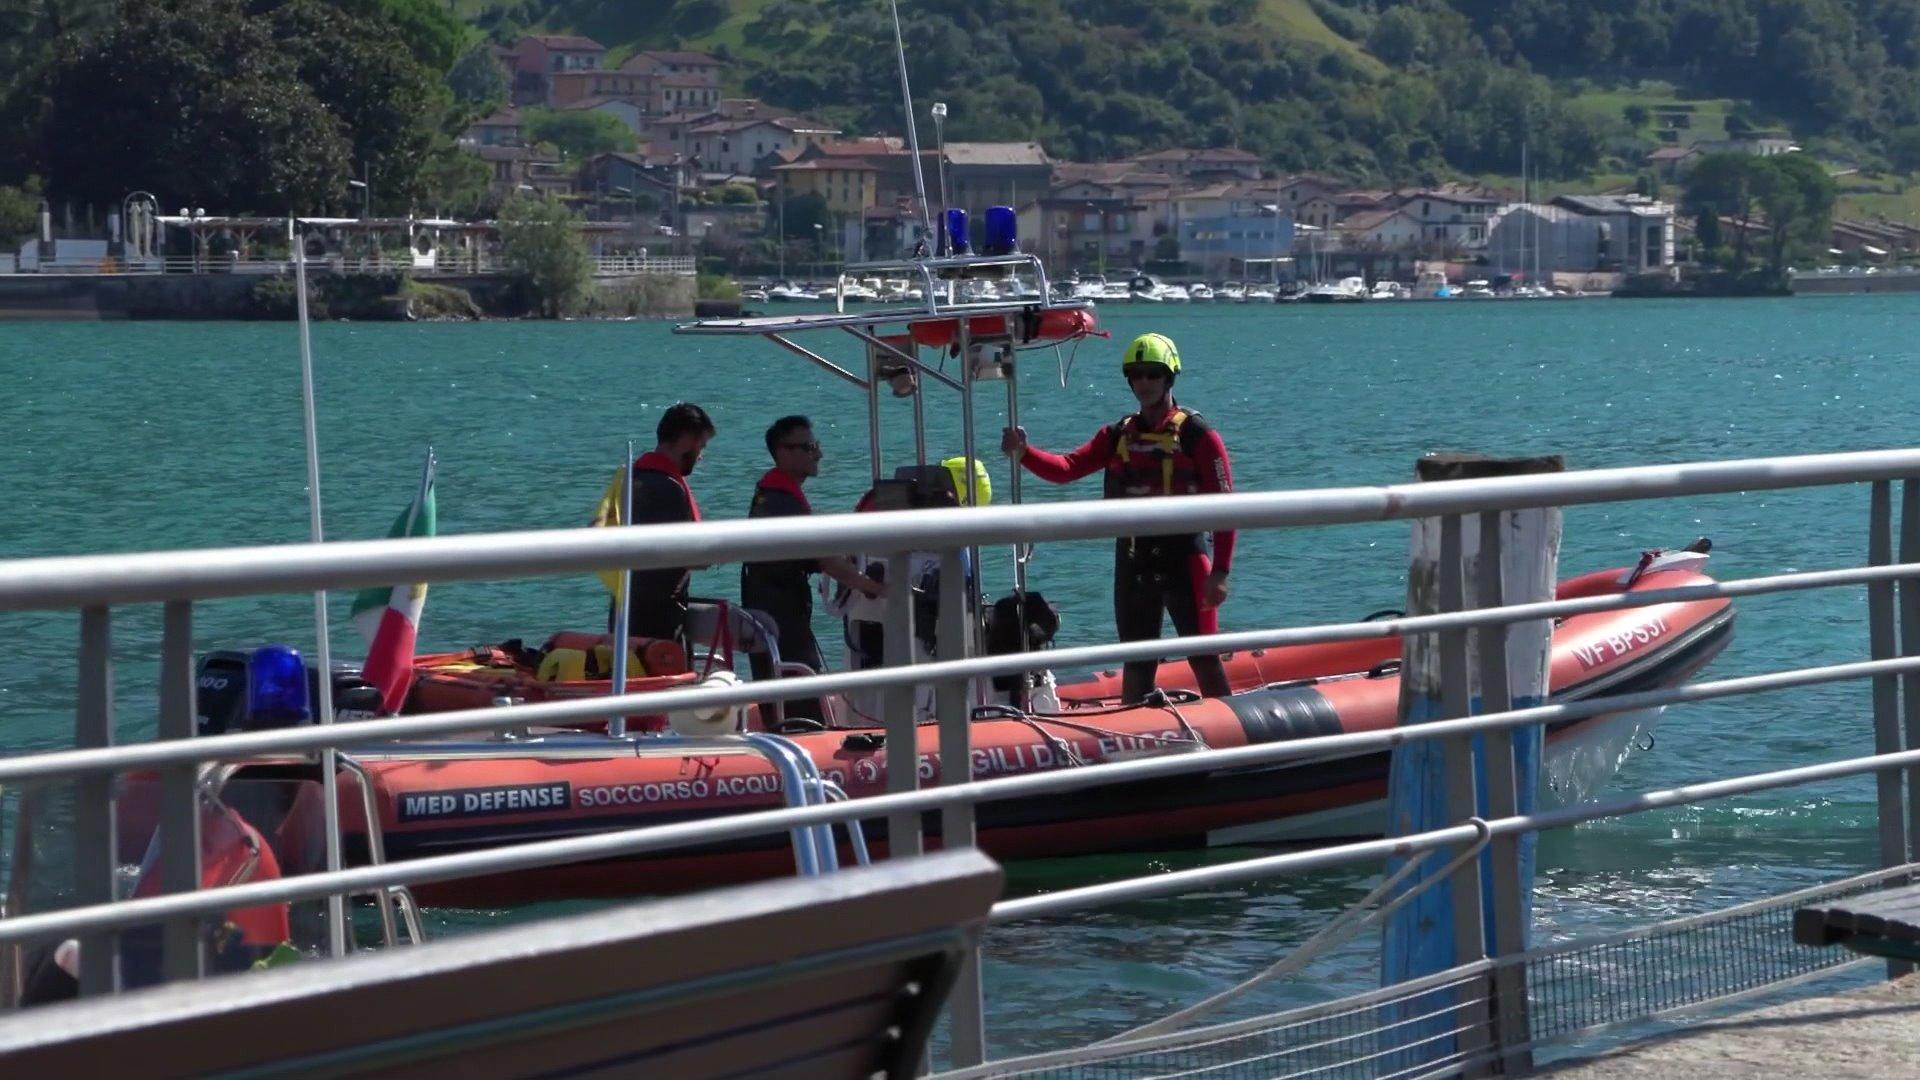 20-jährige Chiara fällt vom Boot und ist unauffindbar Einsatzkräfte suchen nach Chiara